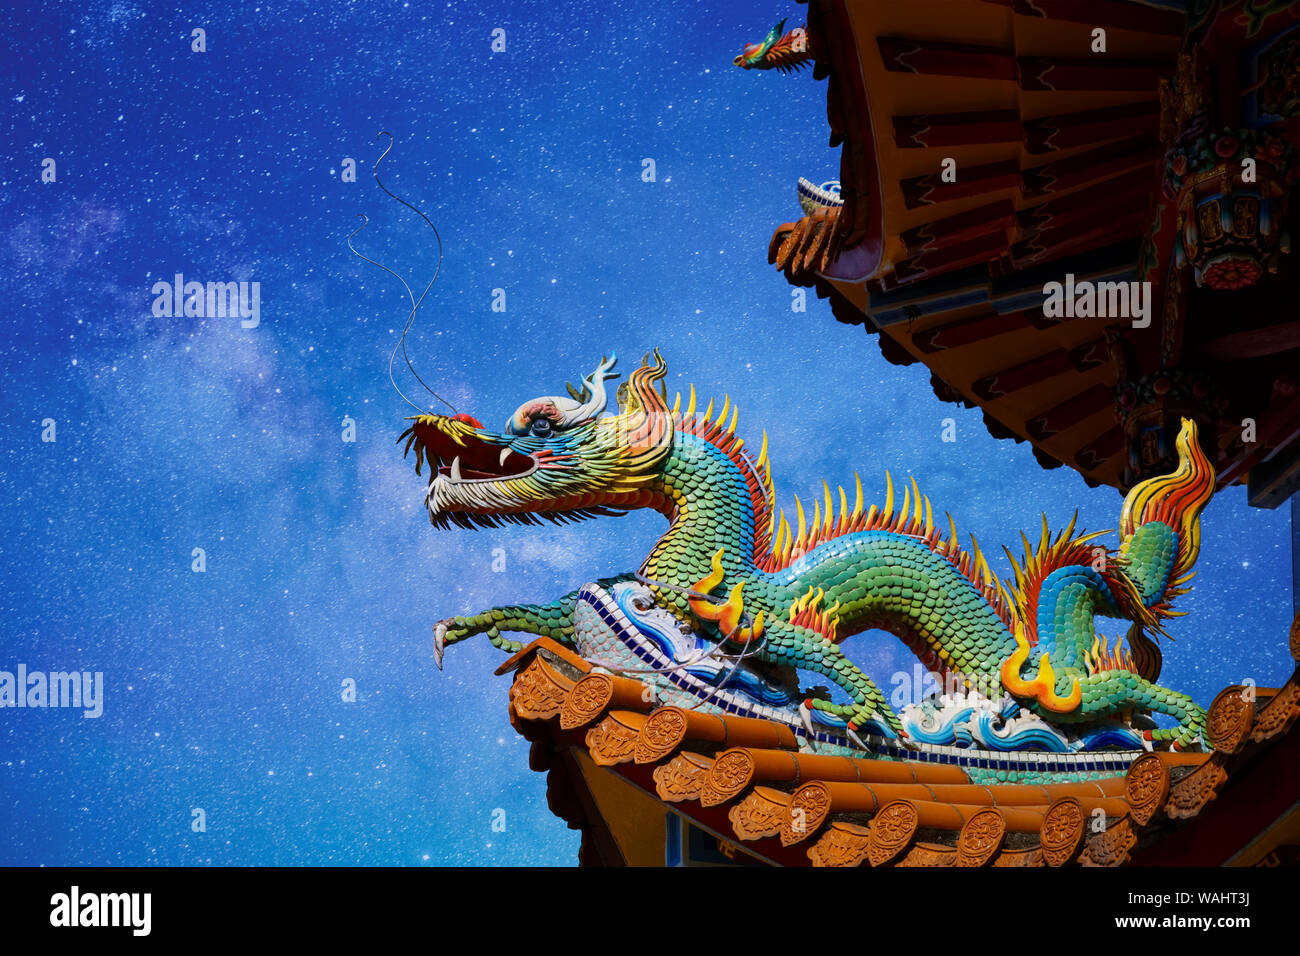 De belles statues de dragon au Temple Zizhu ou Purple Bamboo Temple, comme il est connu avec un ciel étoilé. Situé à Kaohsiung Taiwan, République de Chine Banque D'Images